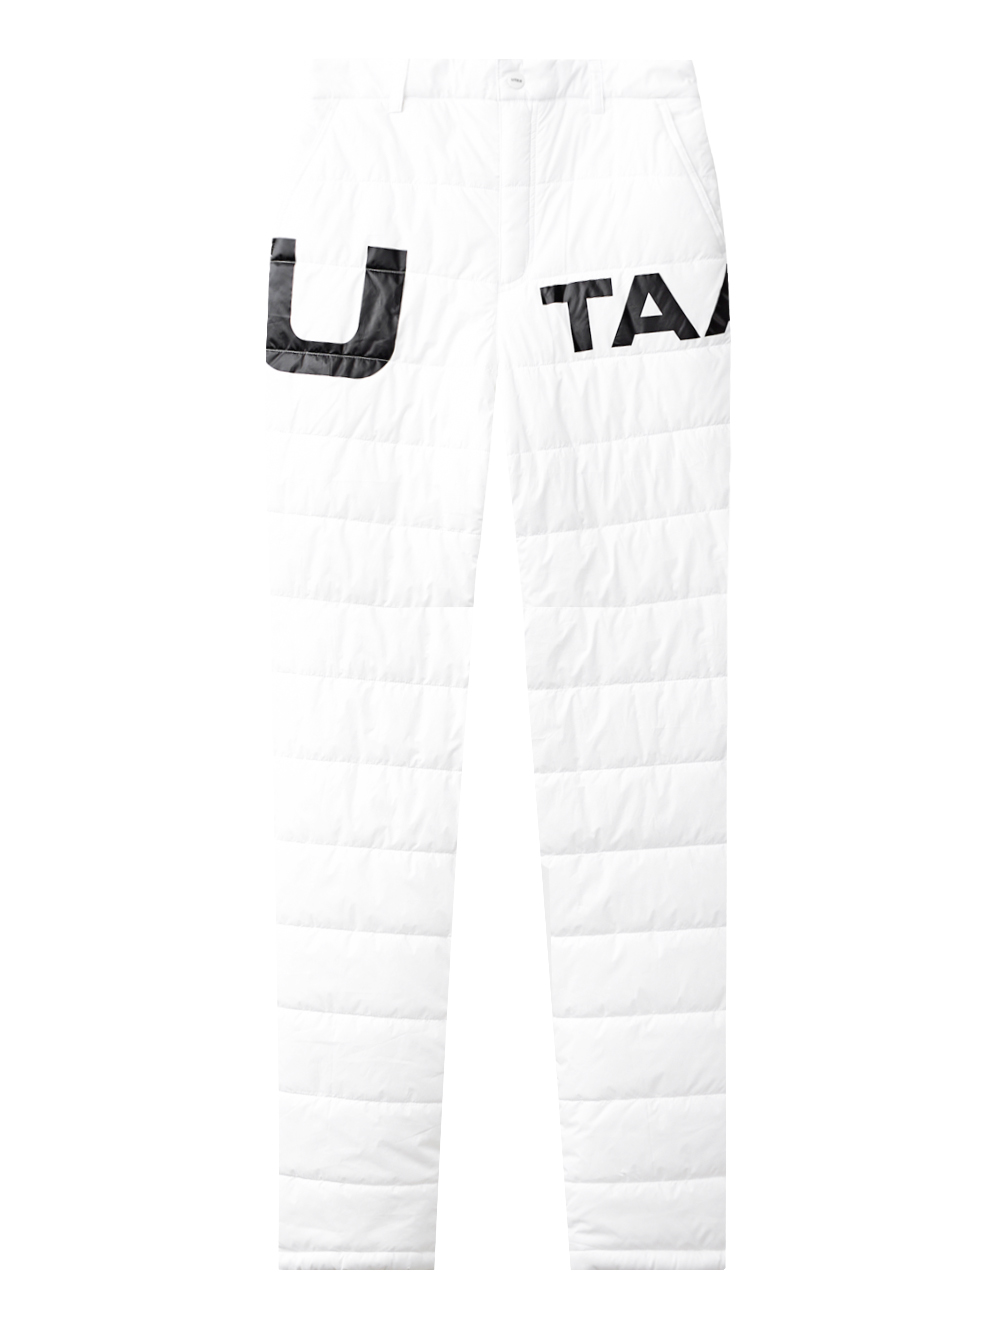 UTAA Slogan Padding Pants : Women&#039;s White(UC4PTF291WH)